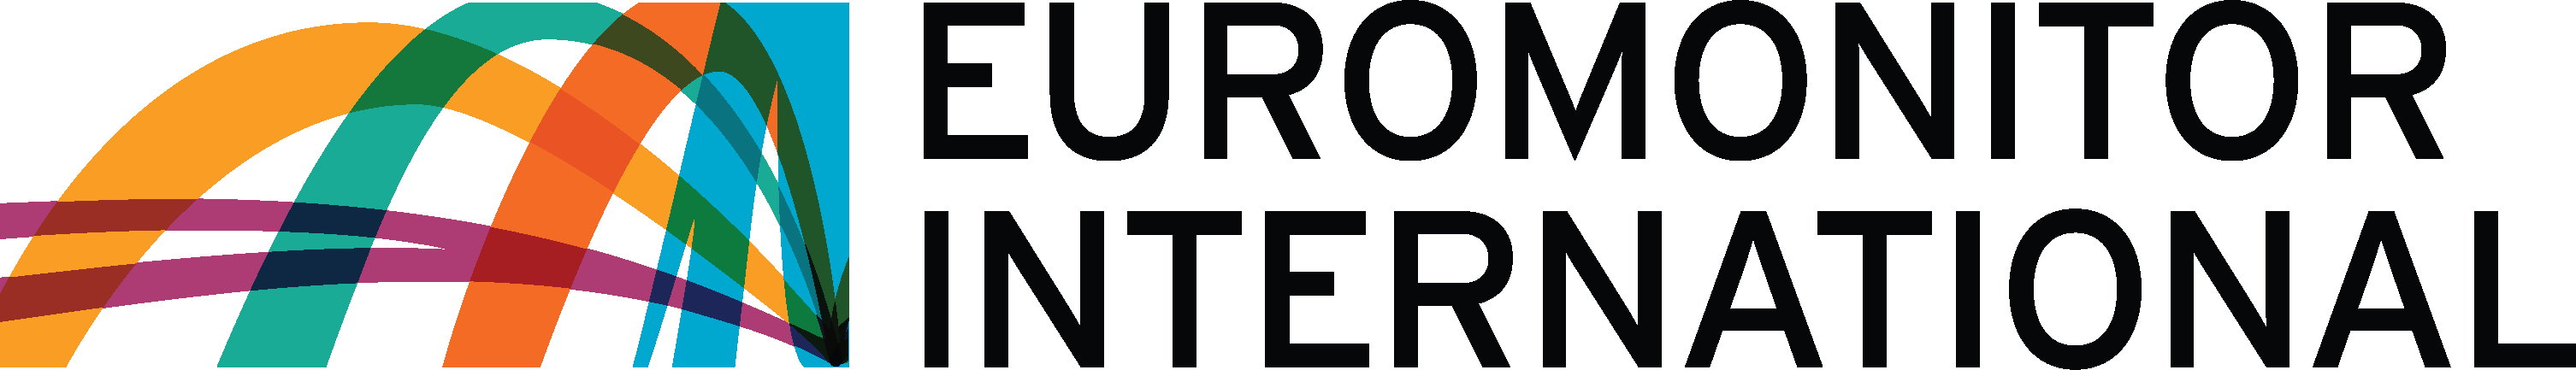 euromonitor_logo.png